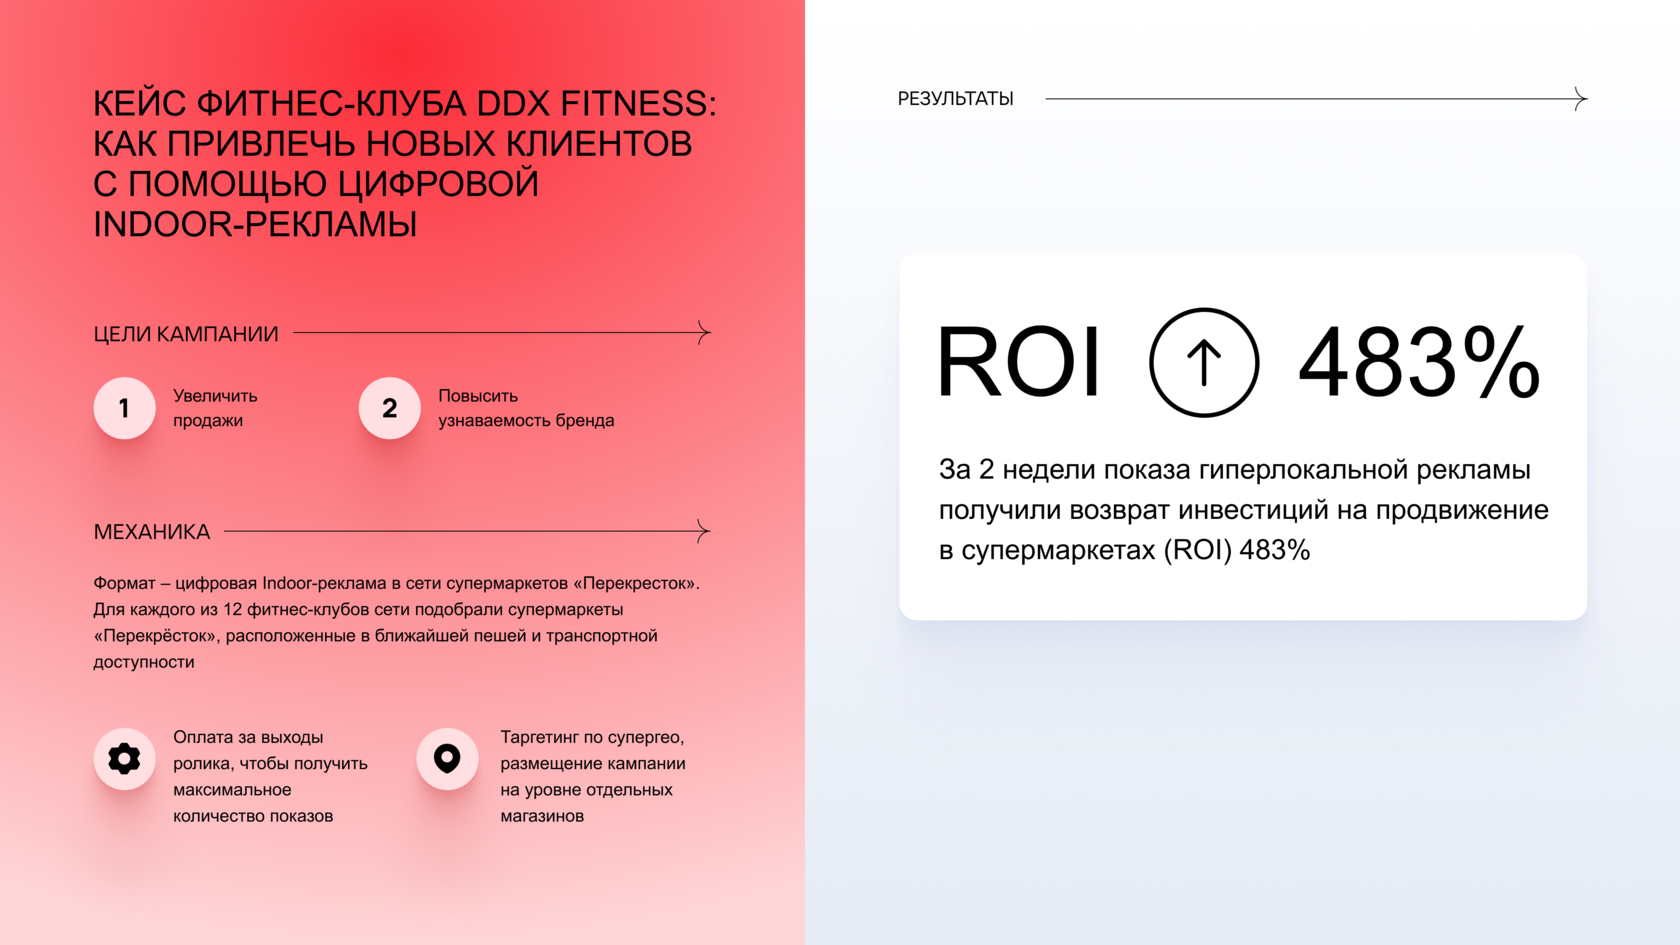 Как привлечь новых клиентов с помощью цифровой Indoor-рекламы: Кейс фитнес- клуба DDX Fitness